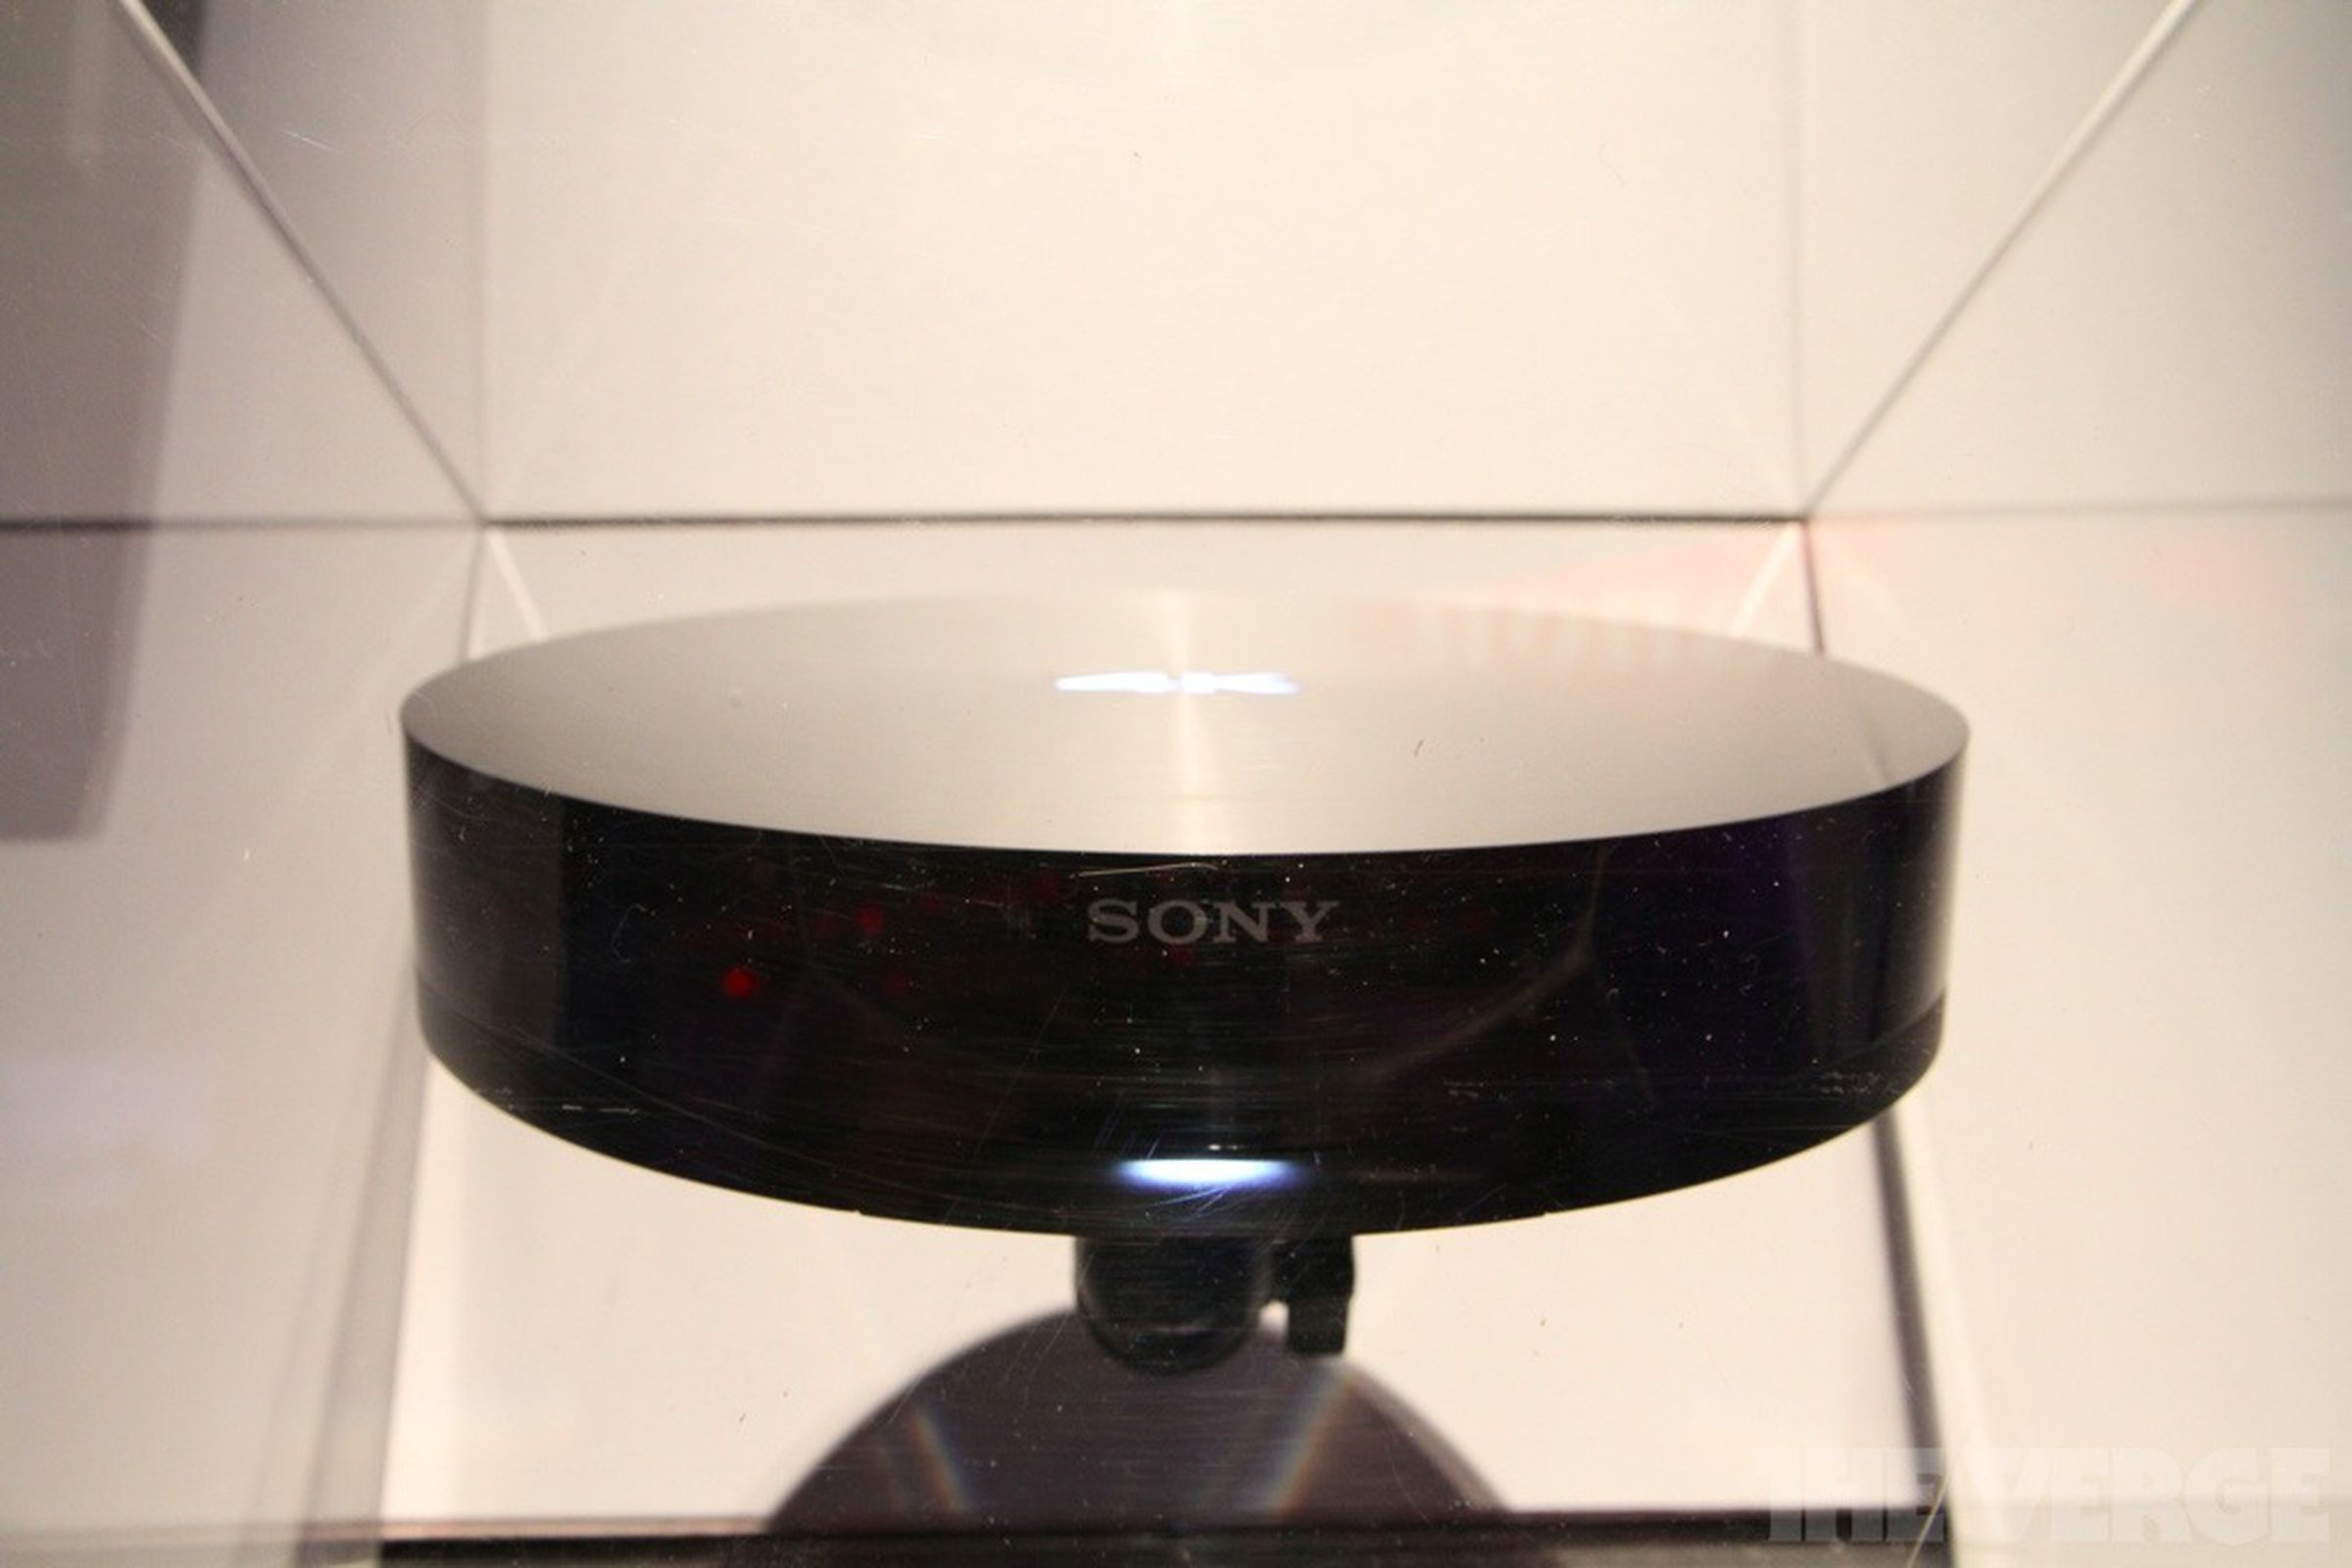 Sony 4K Blu-ray player prototype